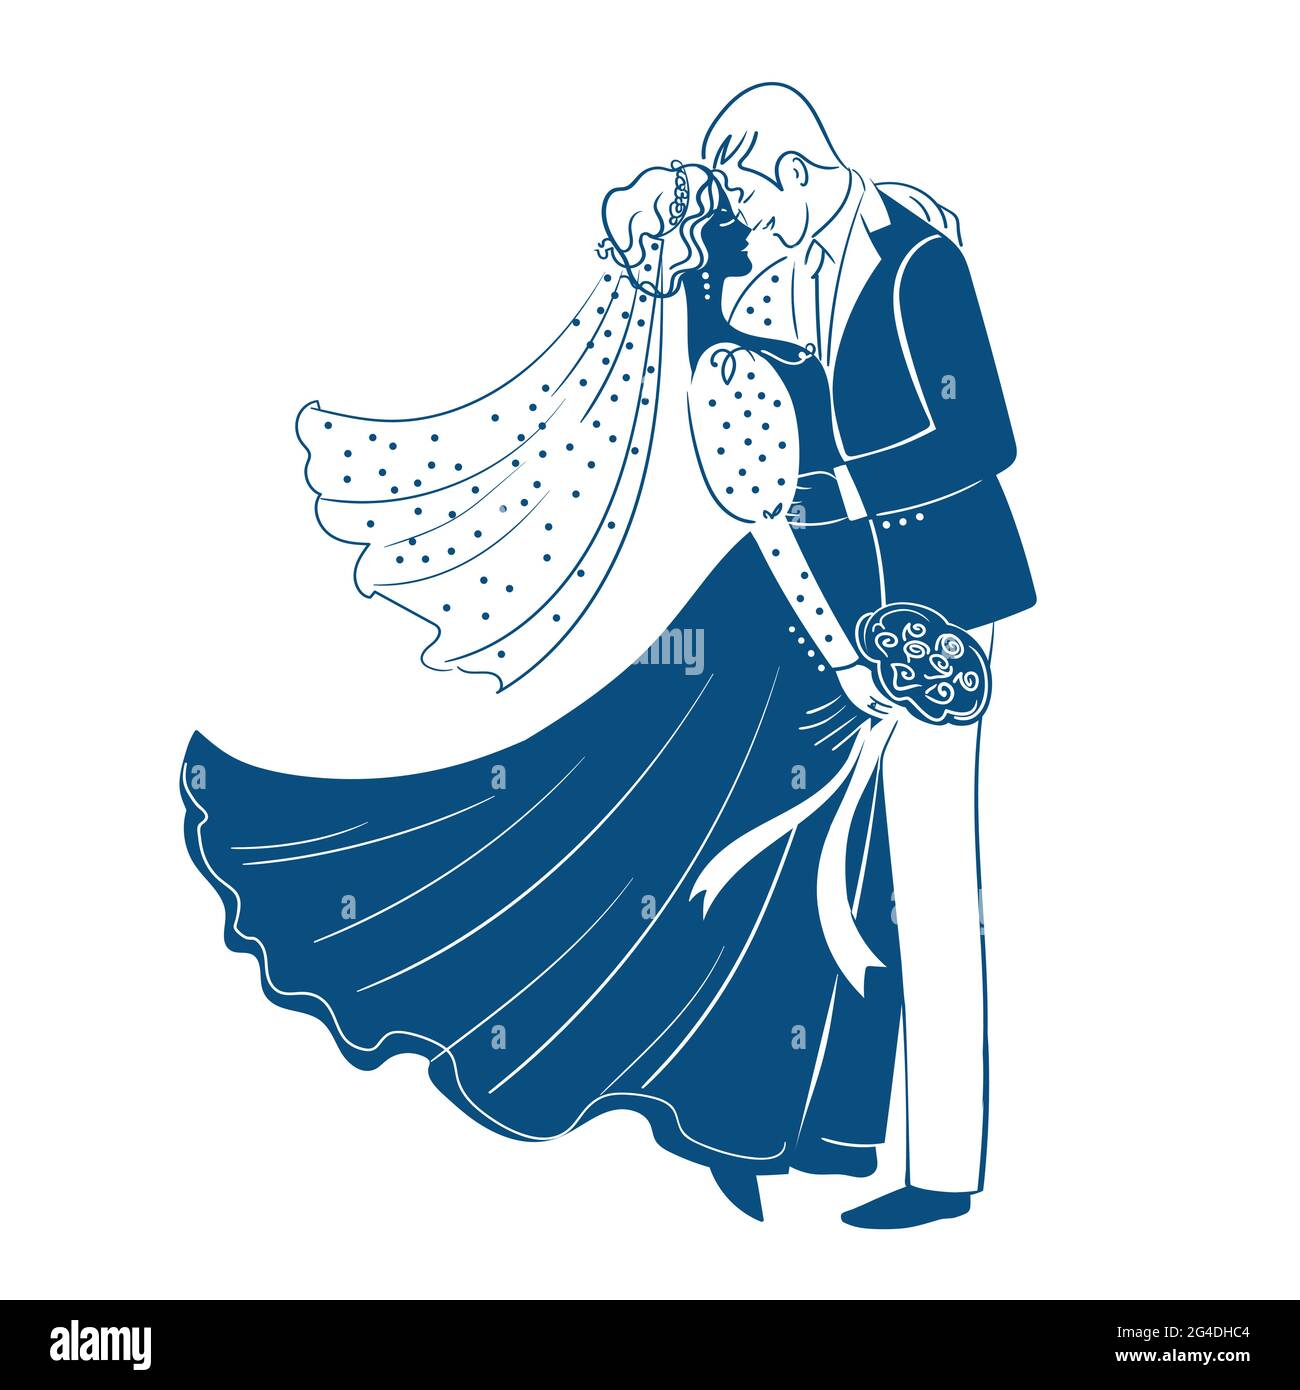 Blaue Silhouetten der Braut und des Bräutigams mit einem Bouquet. Stock Vektor isolierte Abbildung auf weißem Hintergrund.Mischehe.interracial Ehe. Stock Vektor